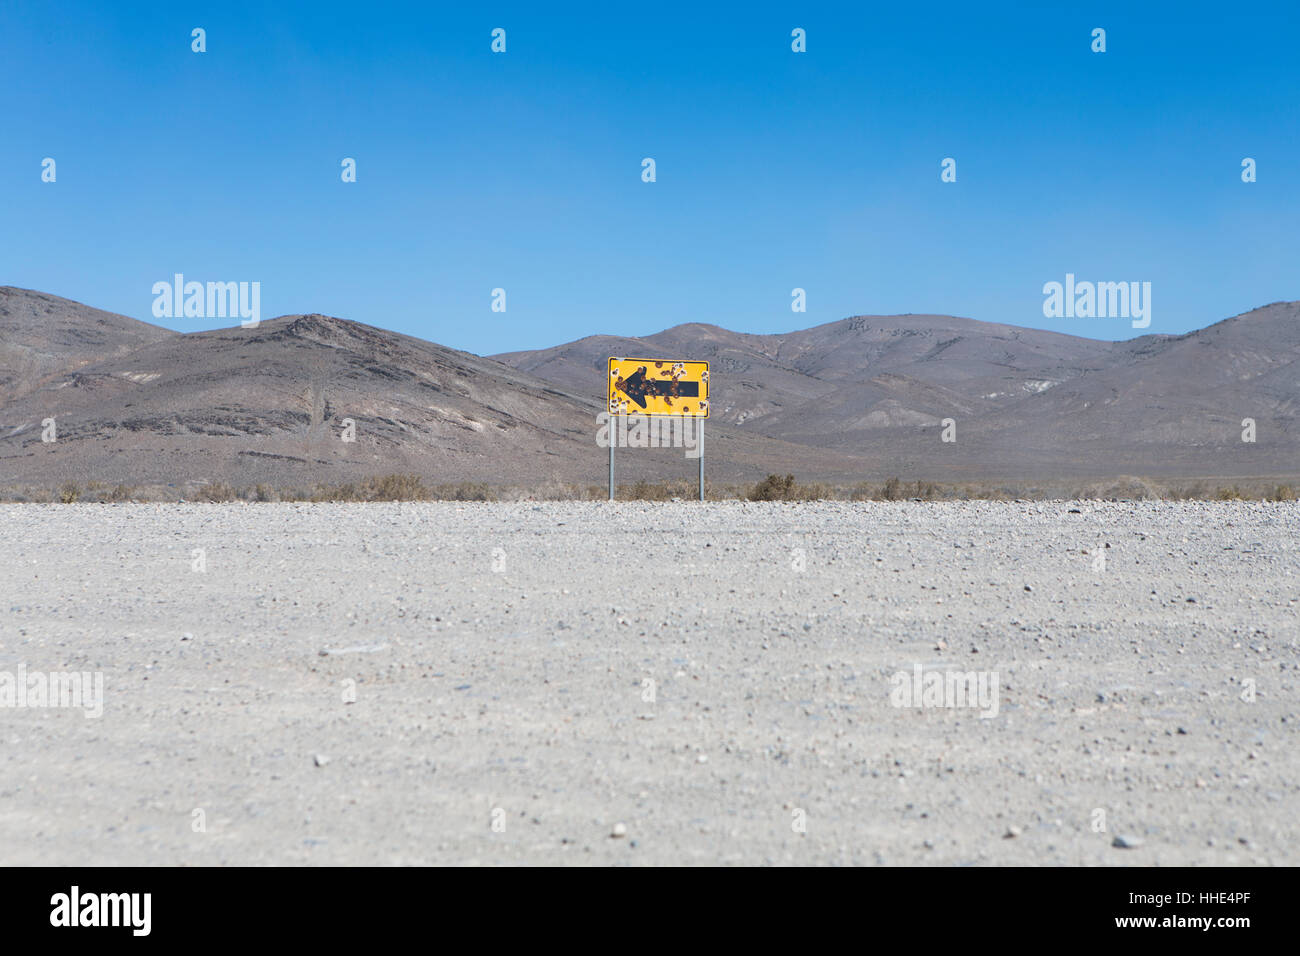 Bullet riddled arrow sign in desert, Black Rock Desert, Nevada Stock Photo